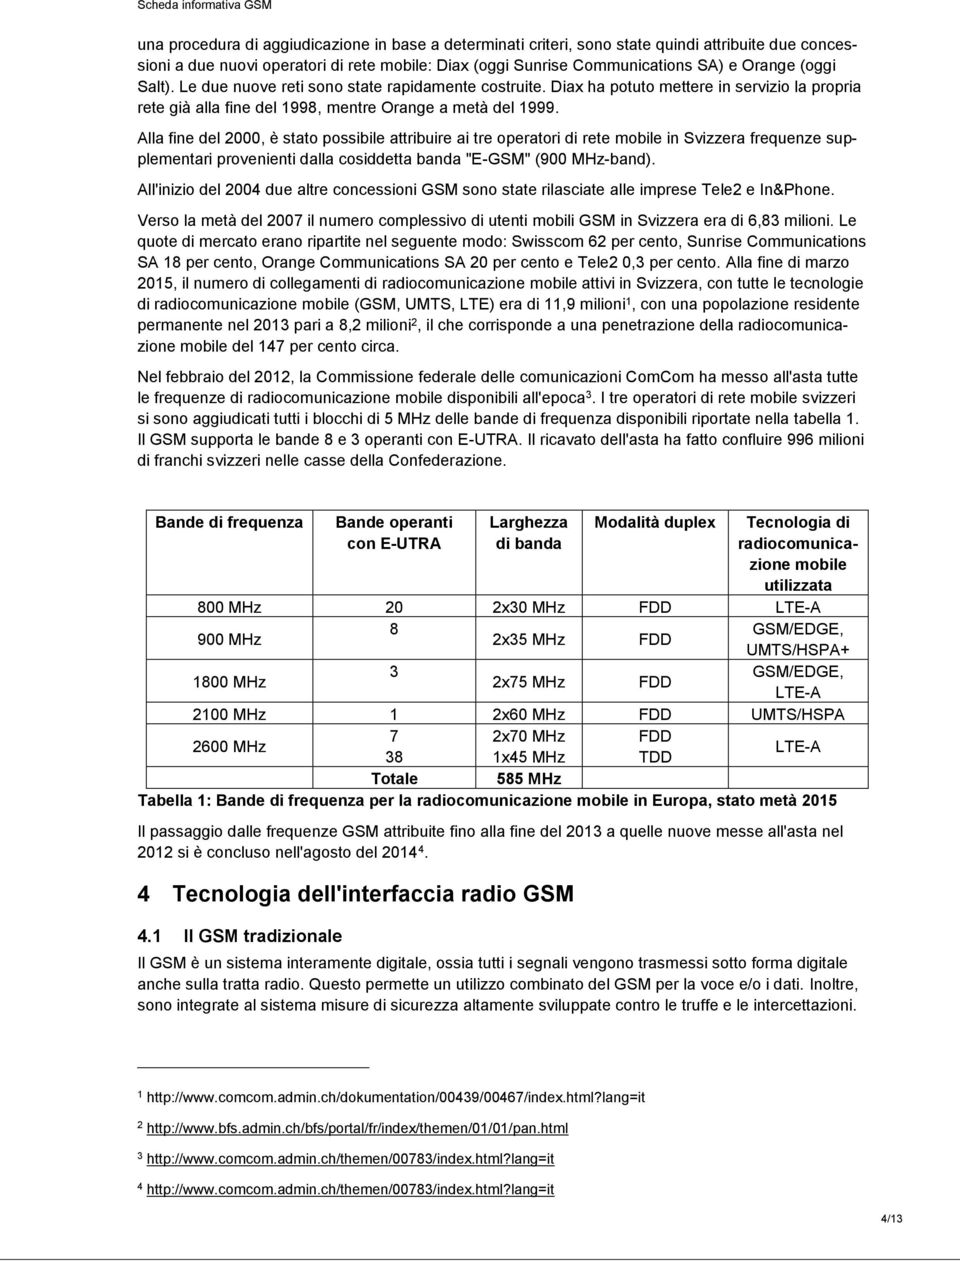 Alla fine del 2000, è stato possibile attribuire ai tre operatori di rete mobile in Svizzera frequenze supplementari provenienti dalla cosiddetta banda "E-GSM" (900 MHz-band).